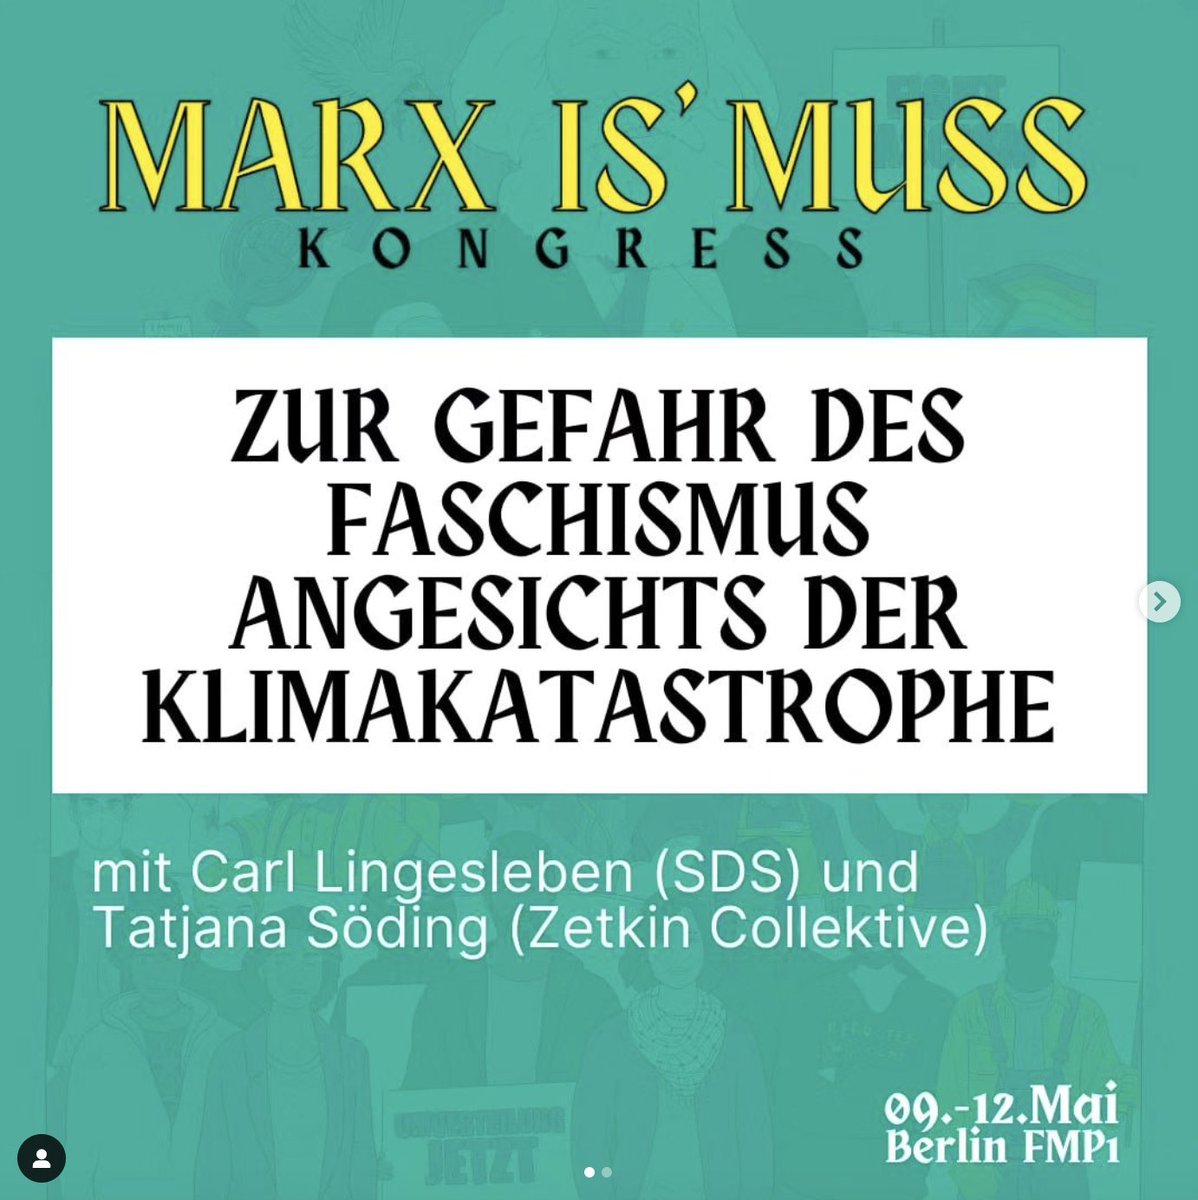 Marx is' Muss Kongress in Berlin: kommt vorbei! @marx21de